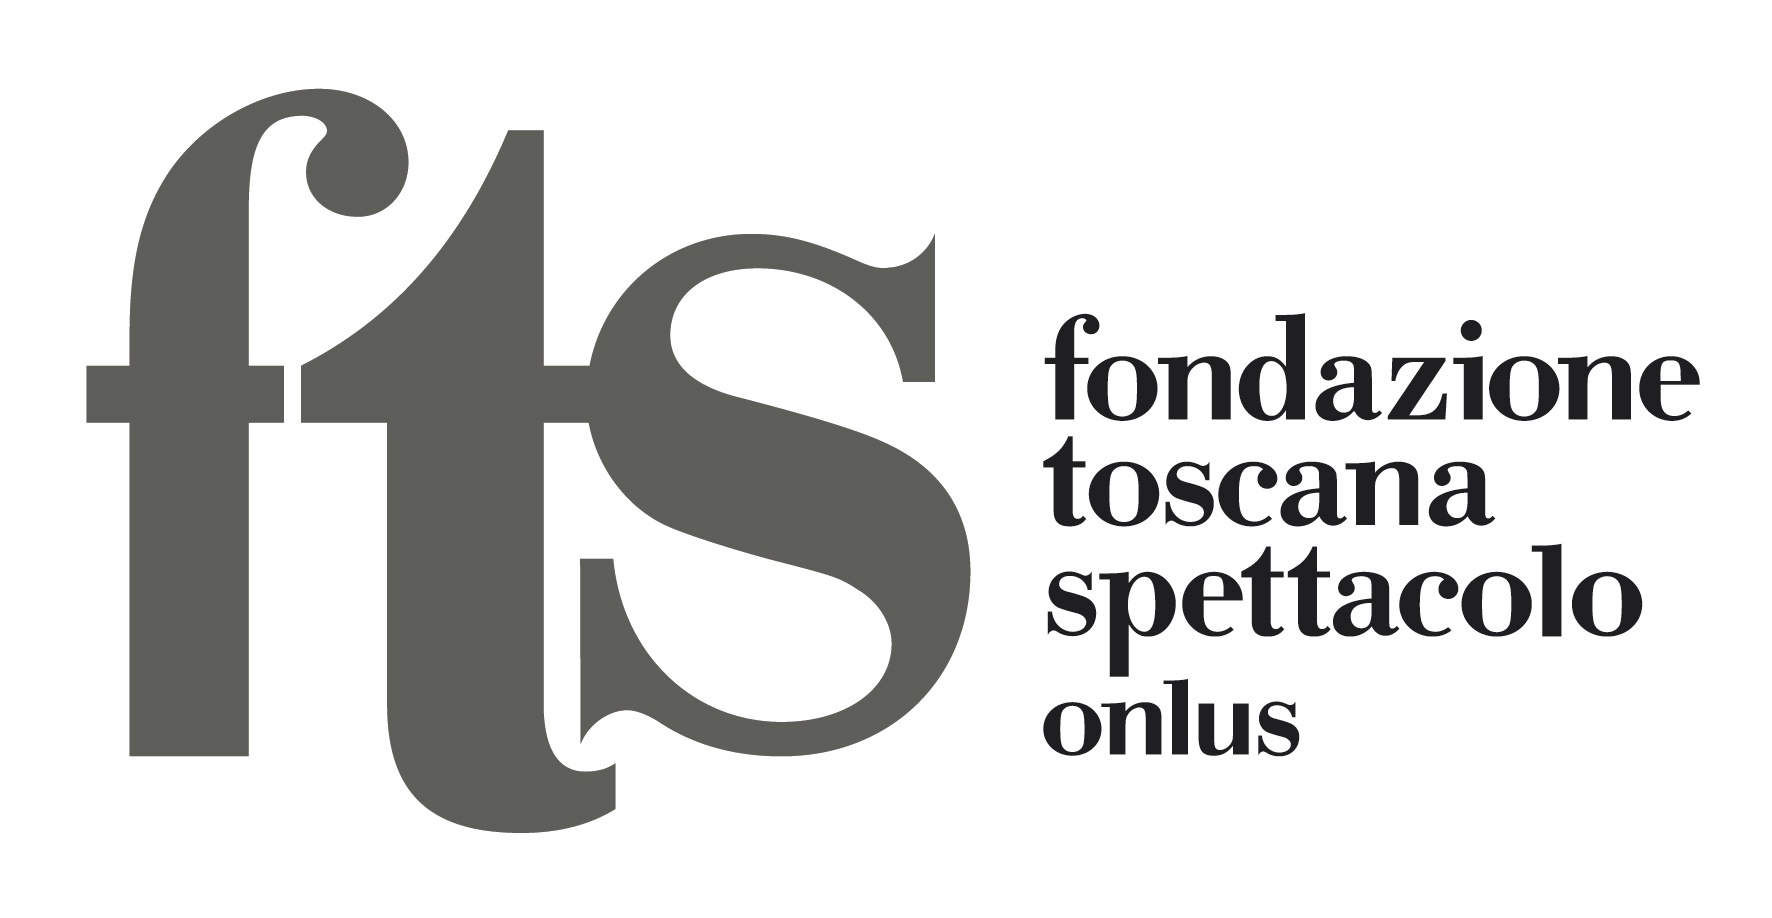 Immagini di Fondazione Toscana Spettacolo onlus